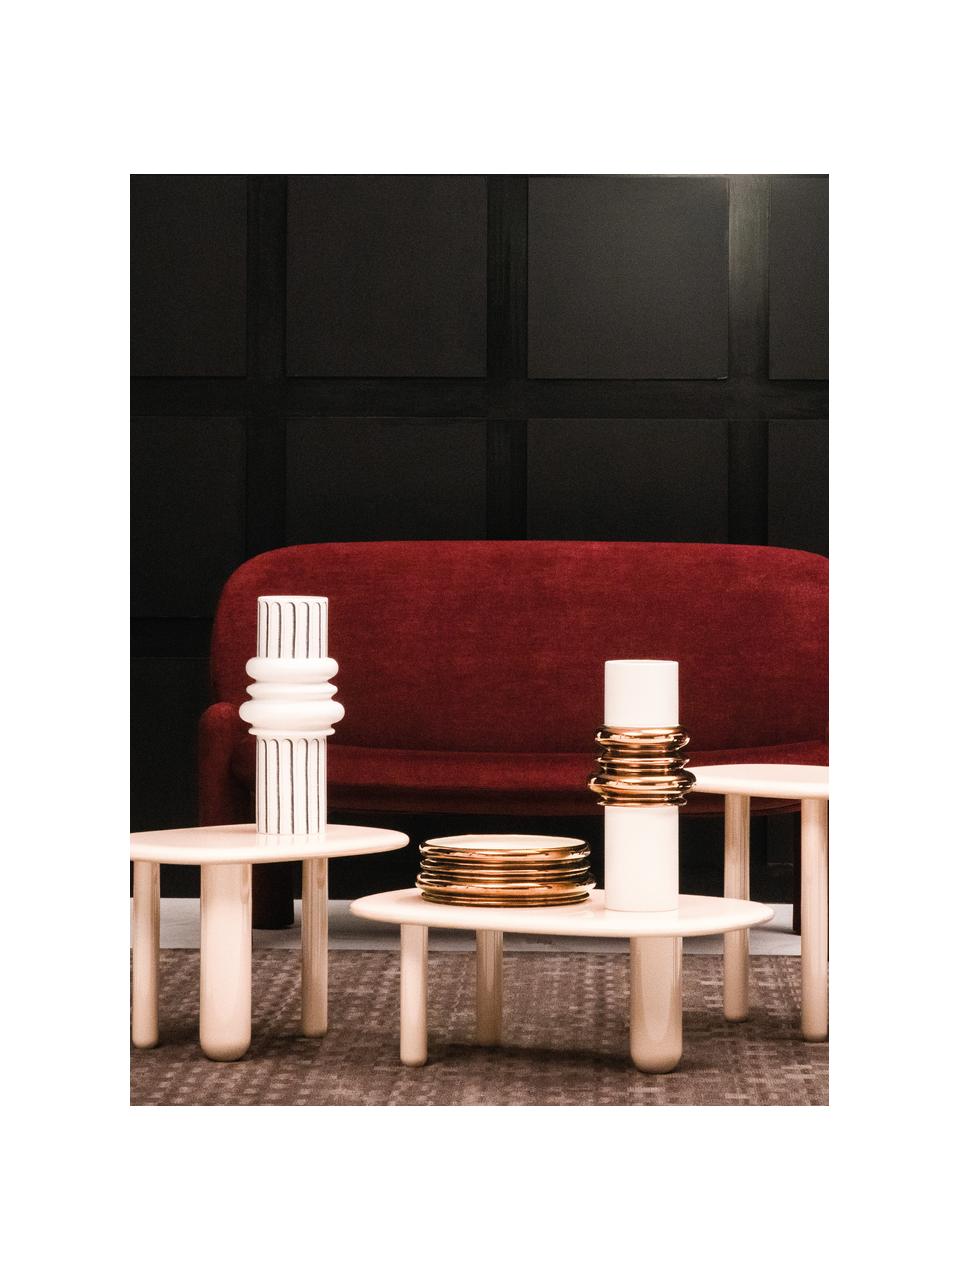 Oválný konferenční stolek Tottori, Lakovaná dřevovláknitá deska střední hustoty (MDF), Dřevo, lakováné světle béžovou, Š 78 cm, H 54 cm